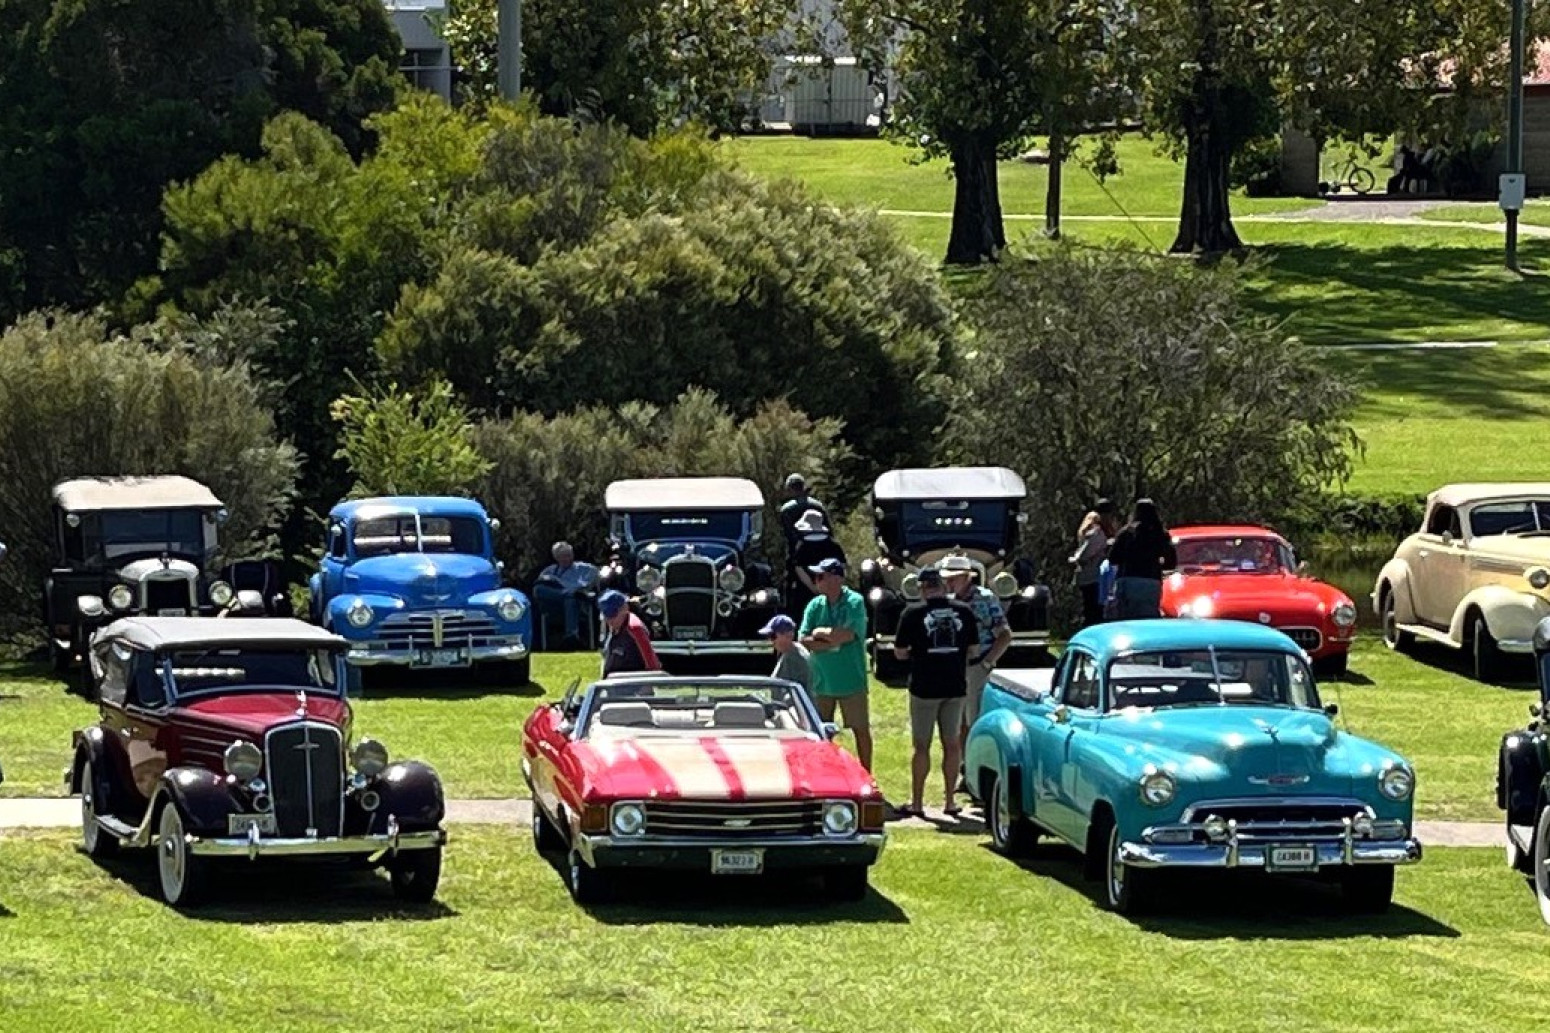 Some of the unique vintage Chevrolets at Quart Pot Creek on April 16.